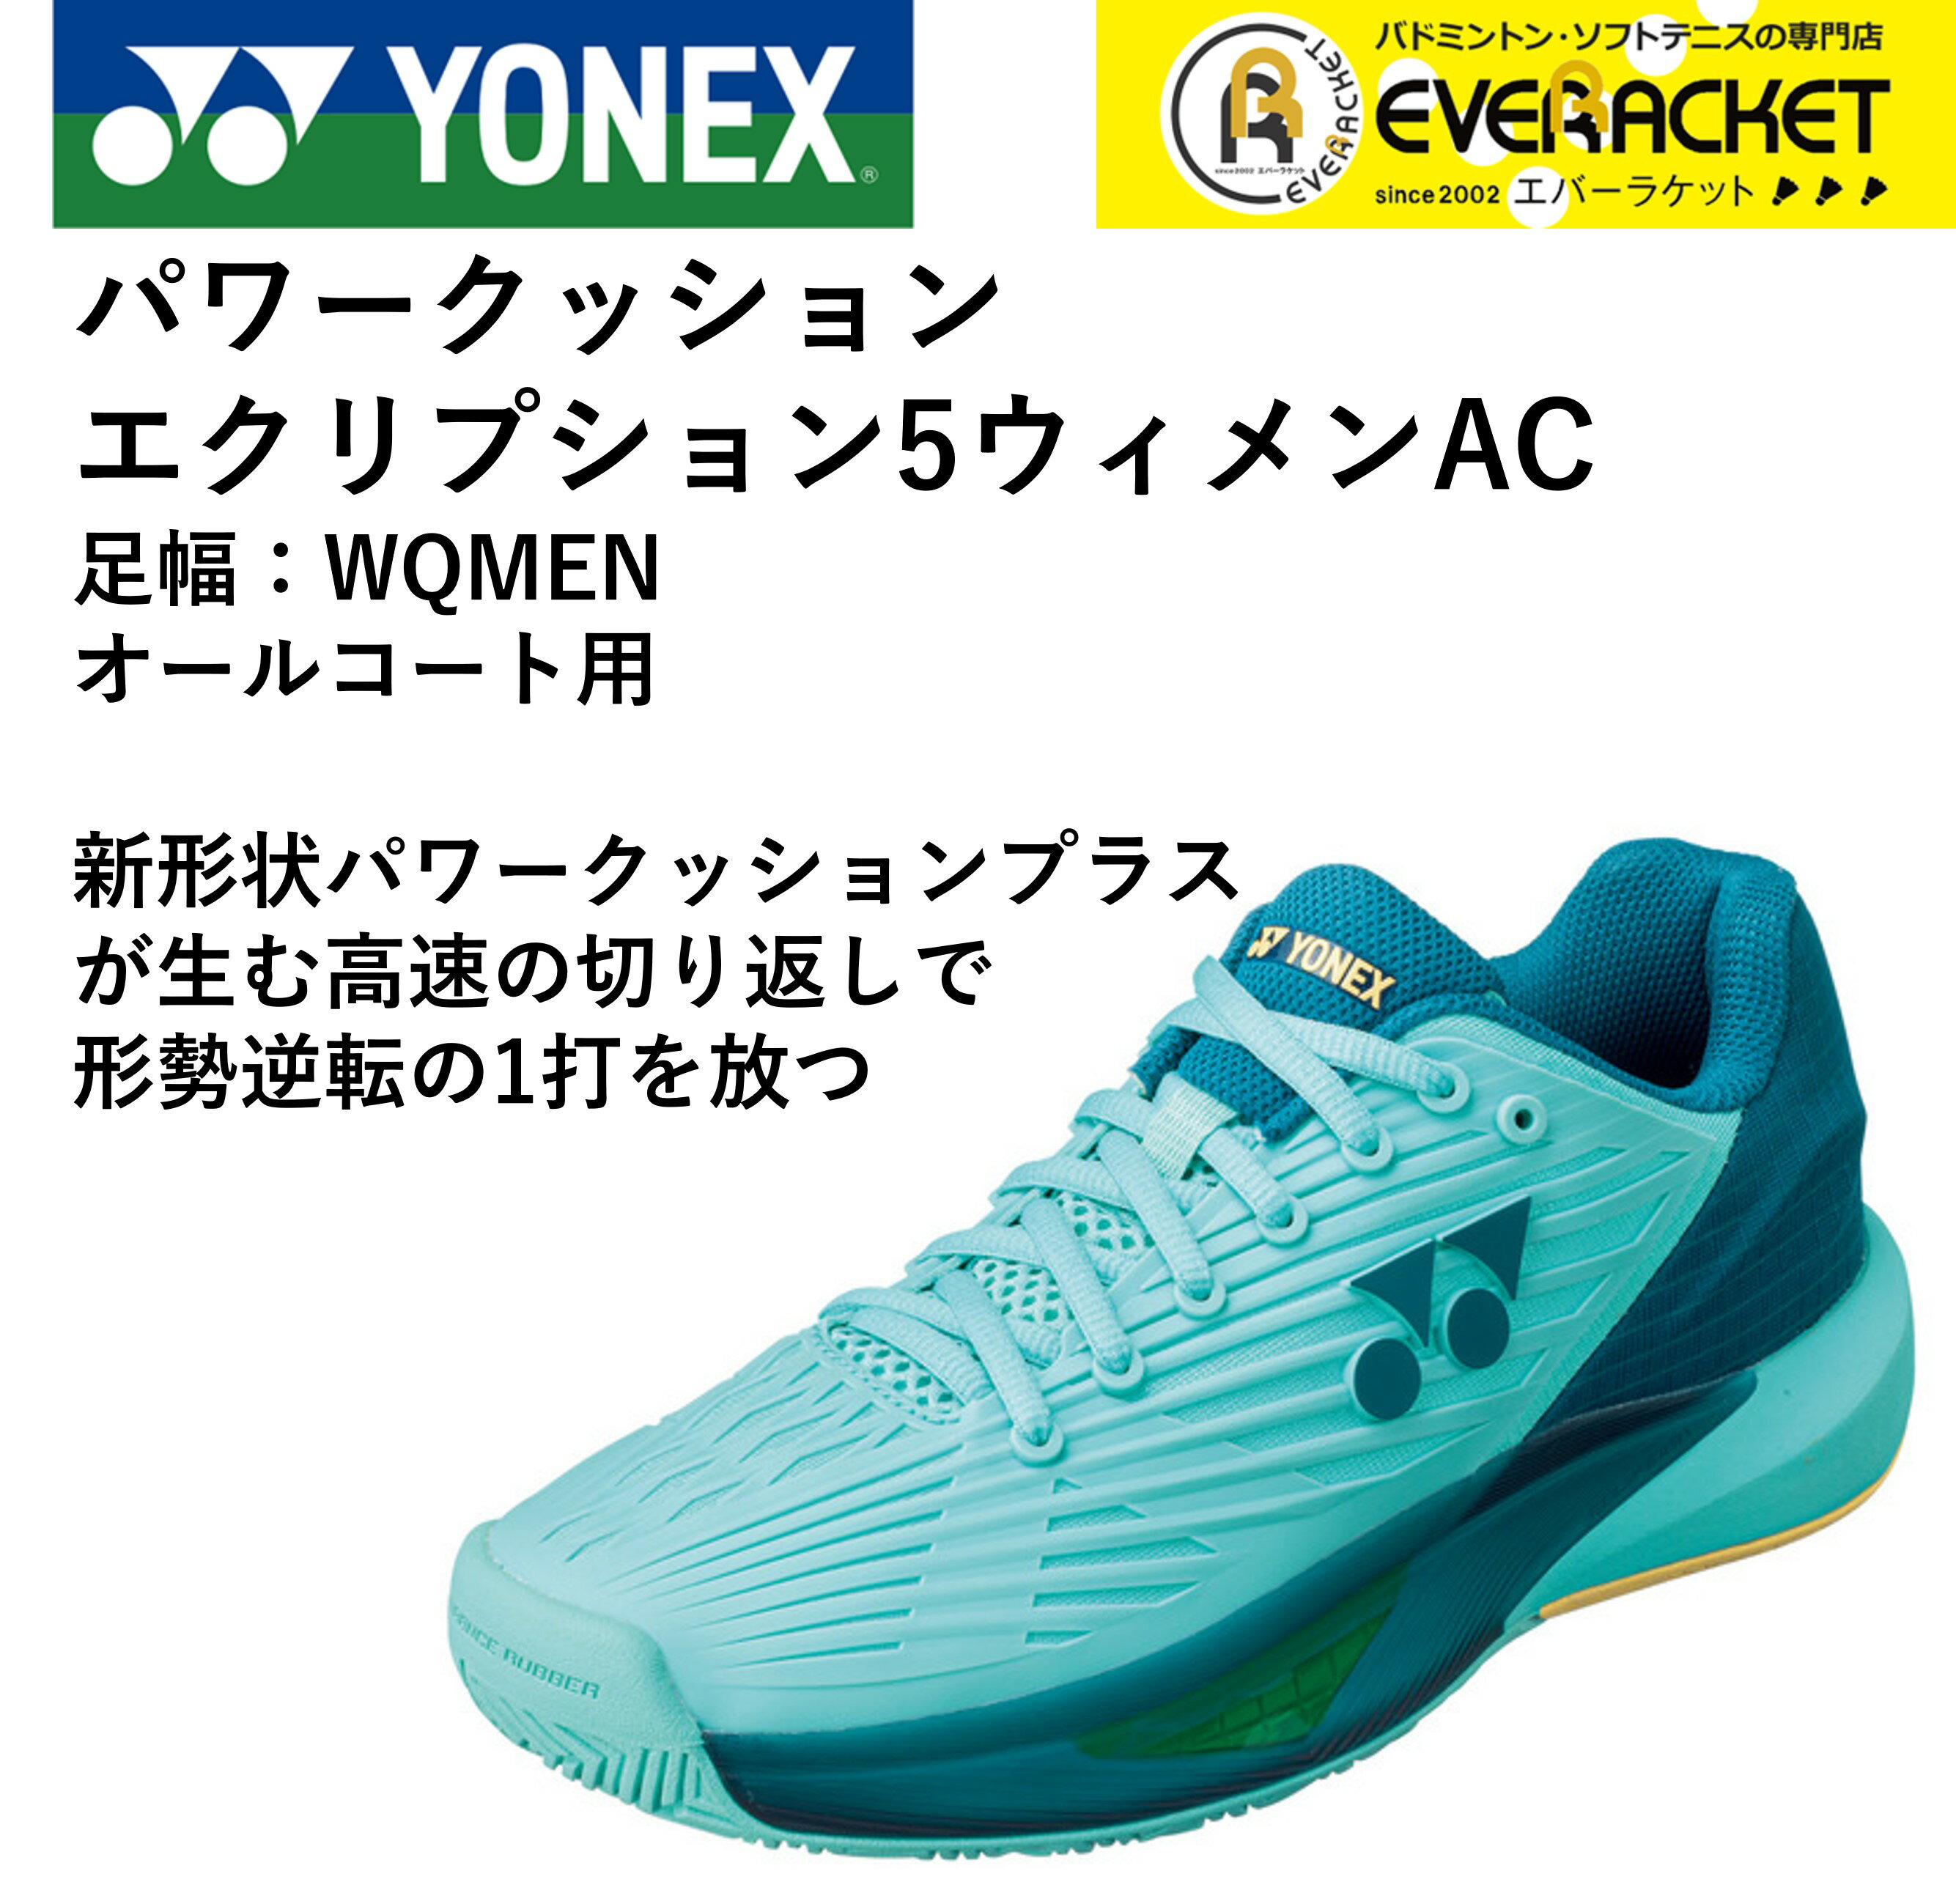 【オールコート用】ヨネックス YONEX ソフトテニスシューズ パワークッションエクリプション5LAC SHTE5LAC